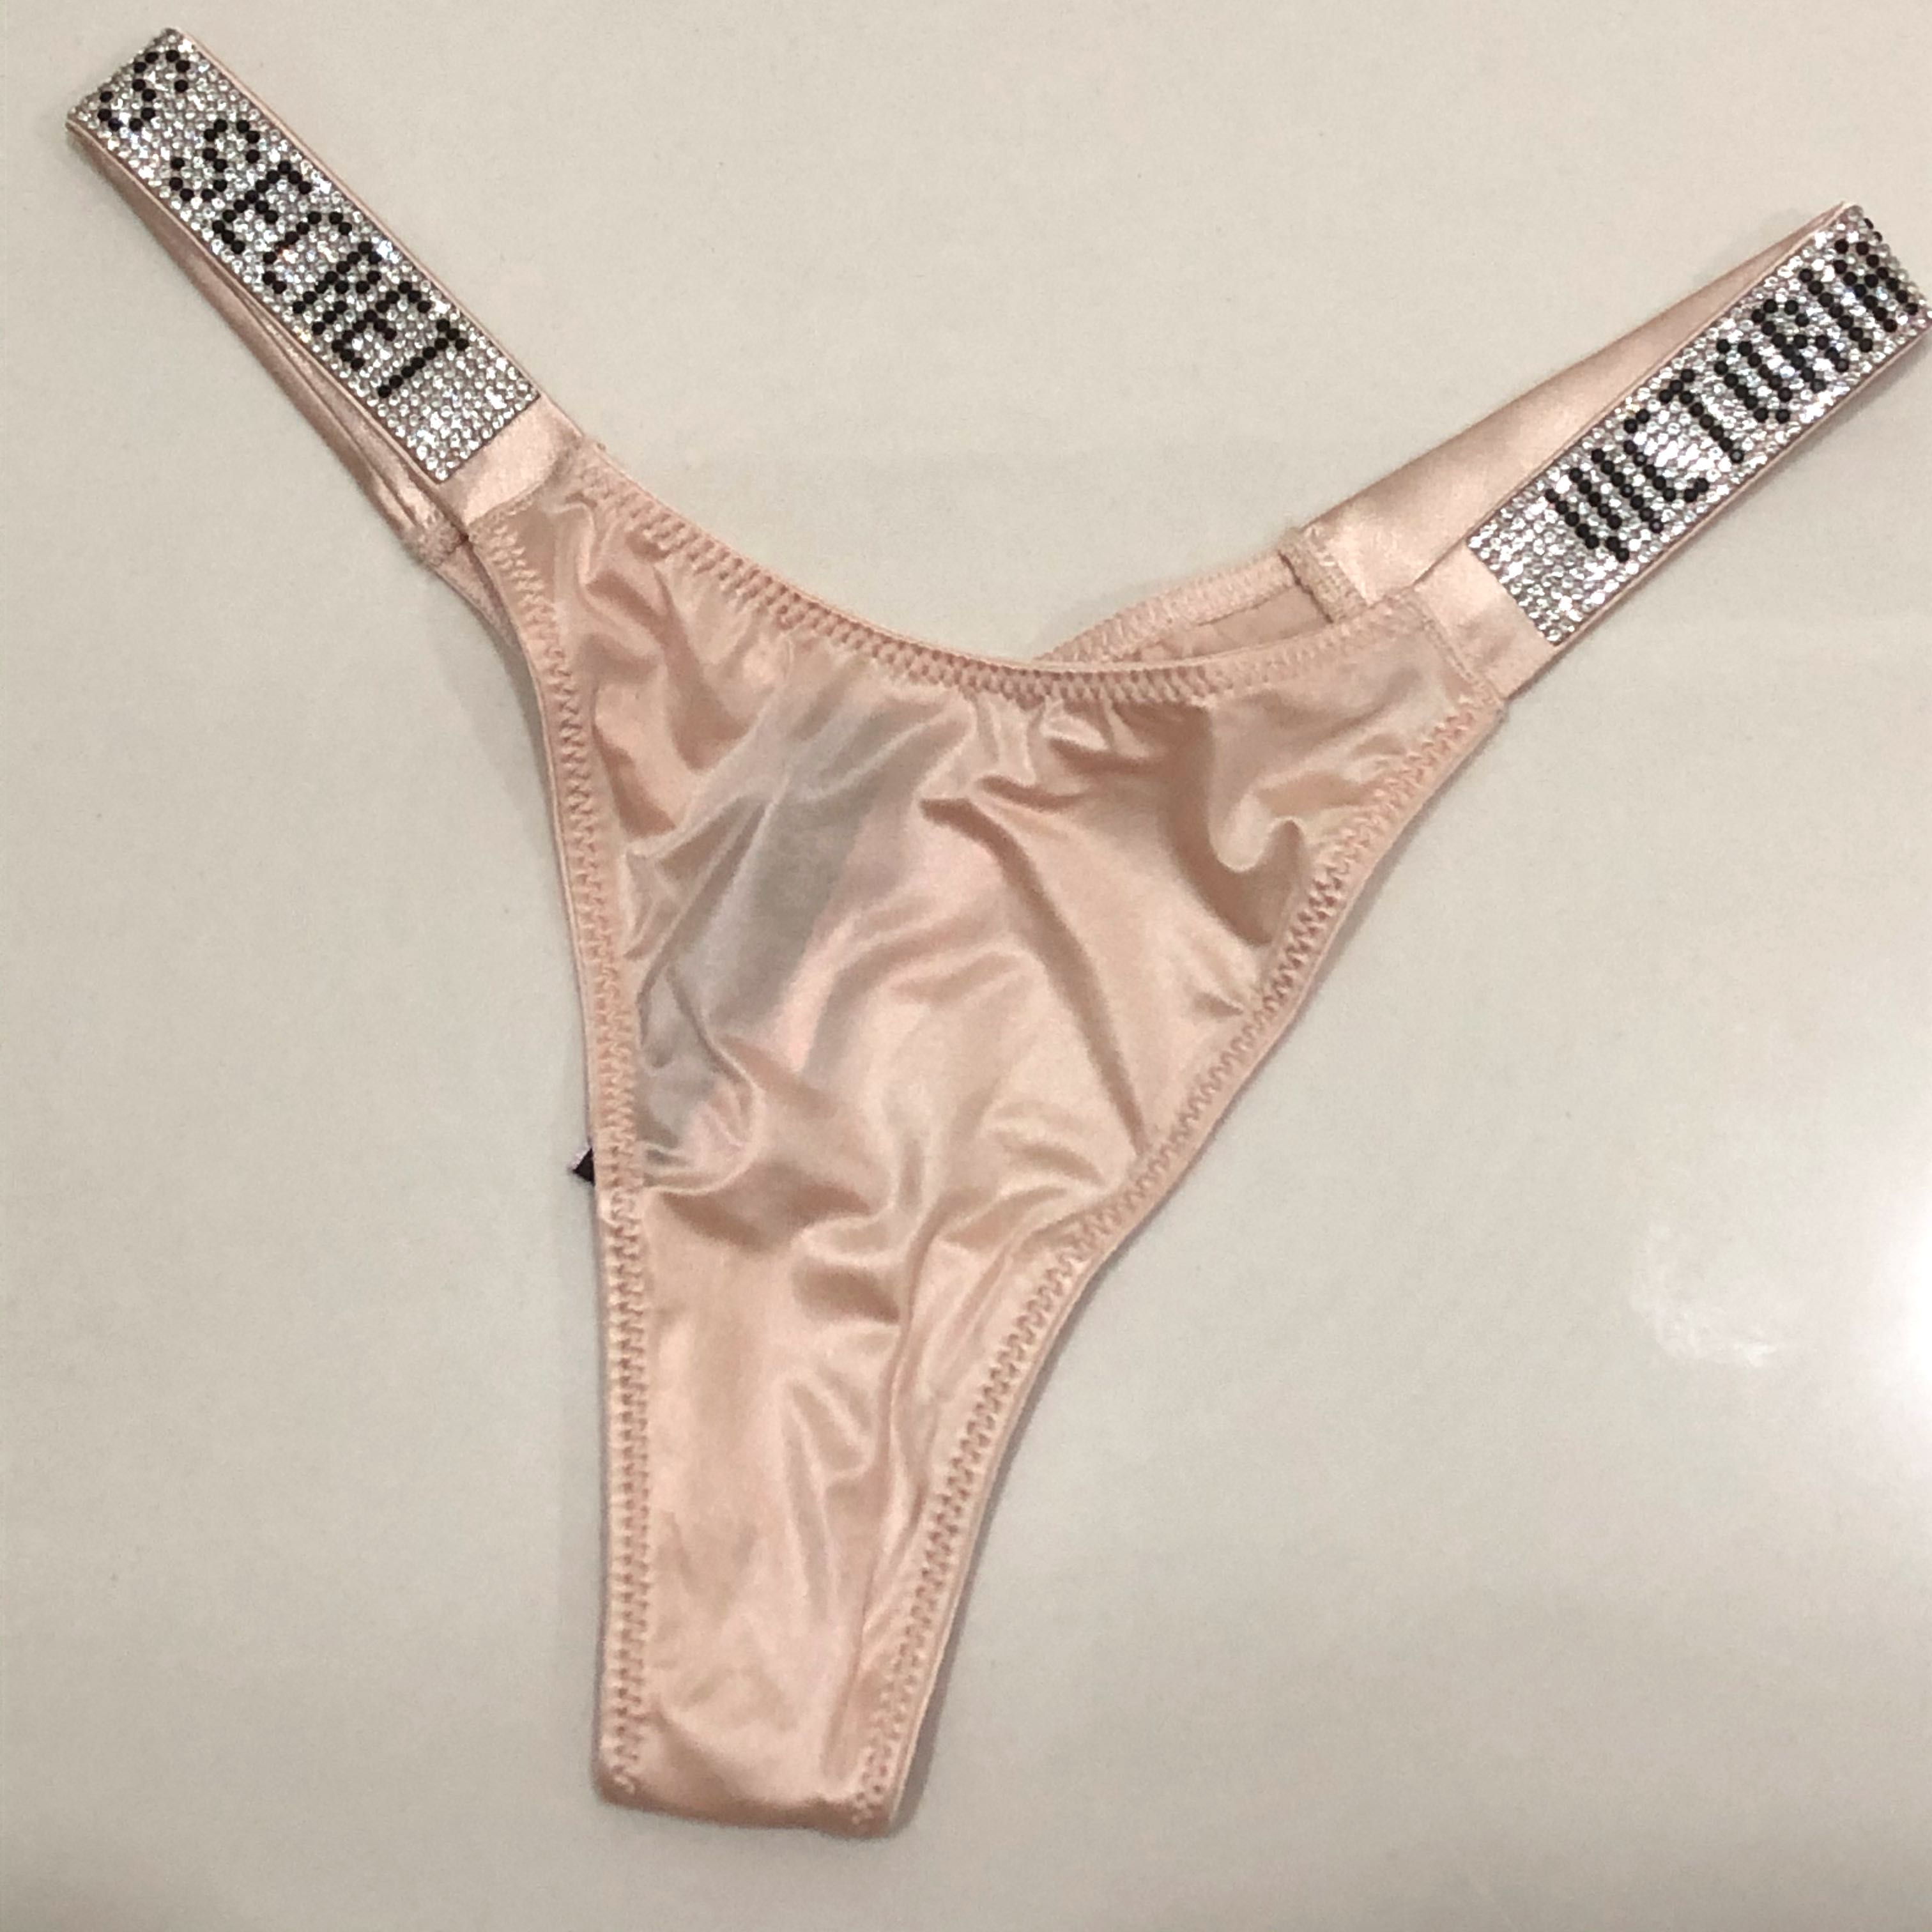 Buy Sugar Coated Rhinestone Thong Panty - Order Panties online 1122912800 -  Victoria's Secret US